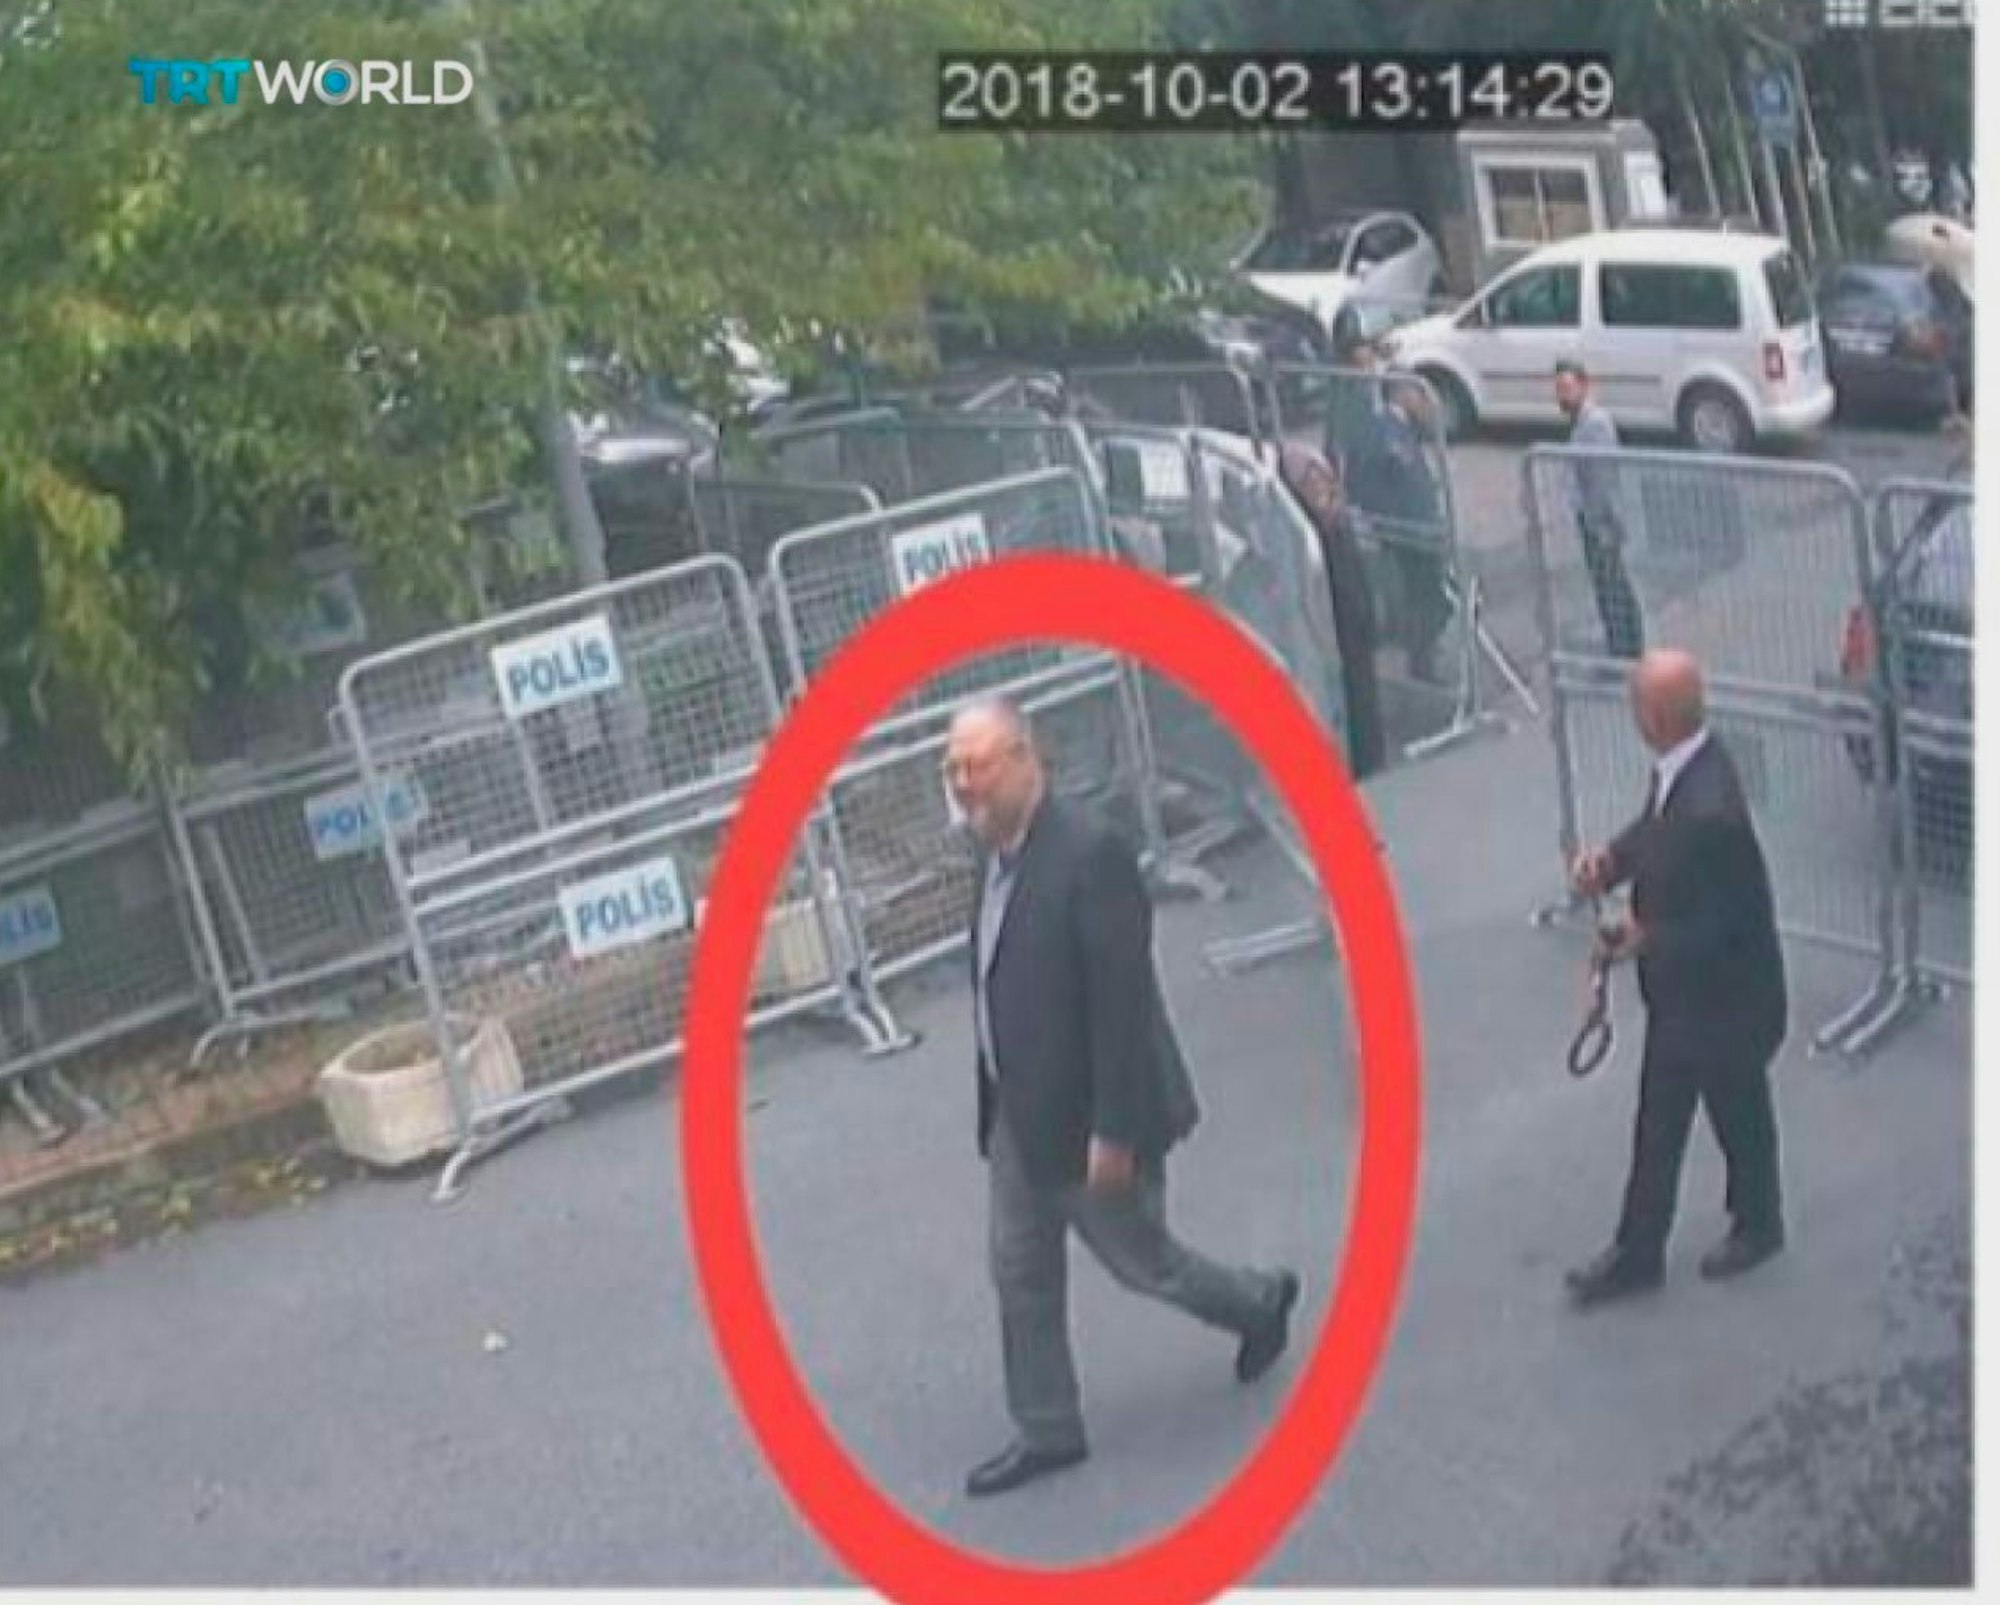 Dieses am 21. Oktober 2018 vom türkischen Sender TRT World zur Verfügung gestellte Videostandbild vom 02. Oktober 2018 zeigt mutmaßlich den saudischen Journalisten Jamal Khashoggi vor Betreten des Konsulats von Saudi-Arabien in Istanbul.